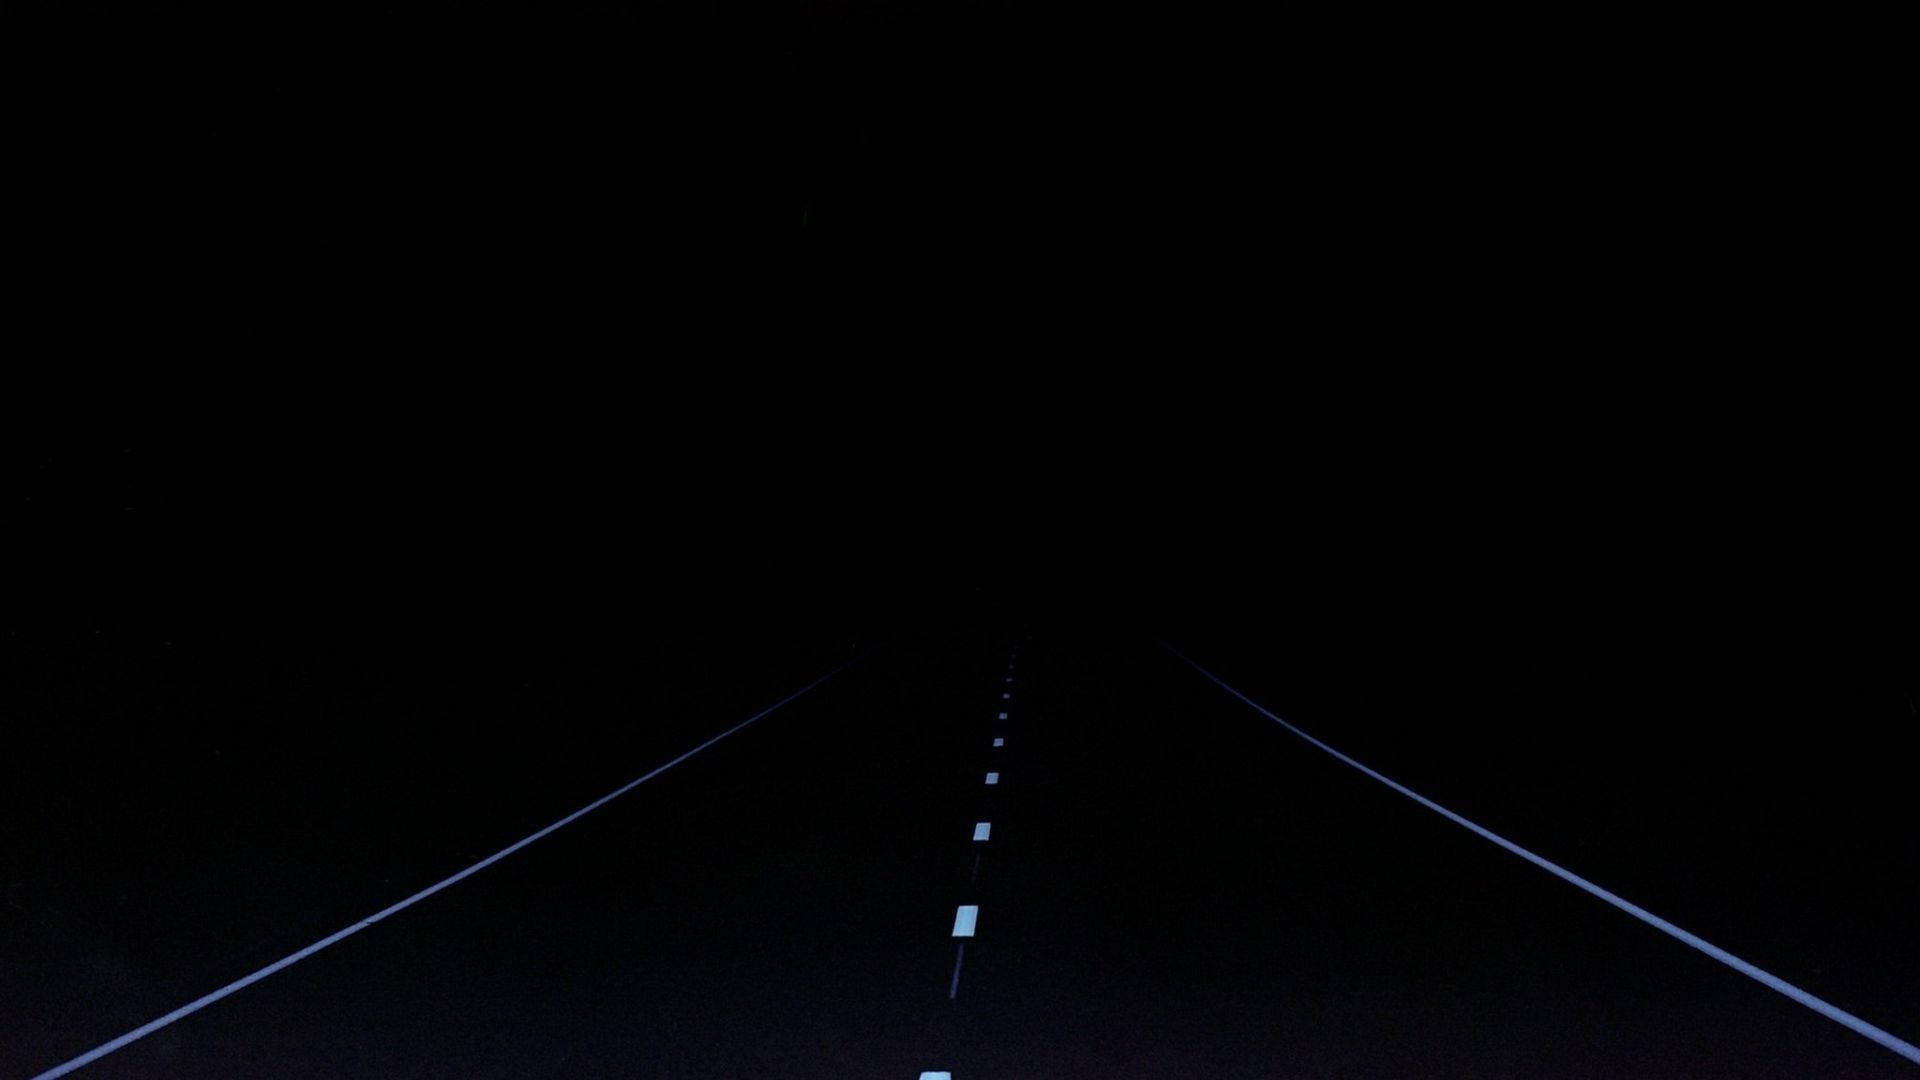 Minimal Dark Road Background